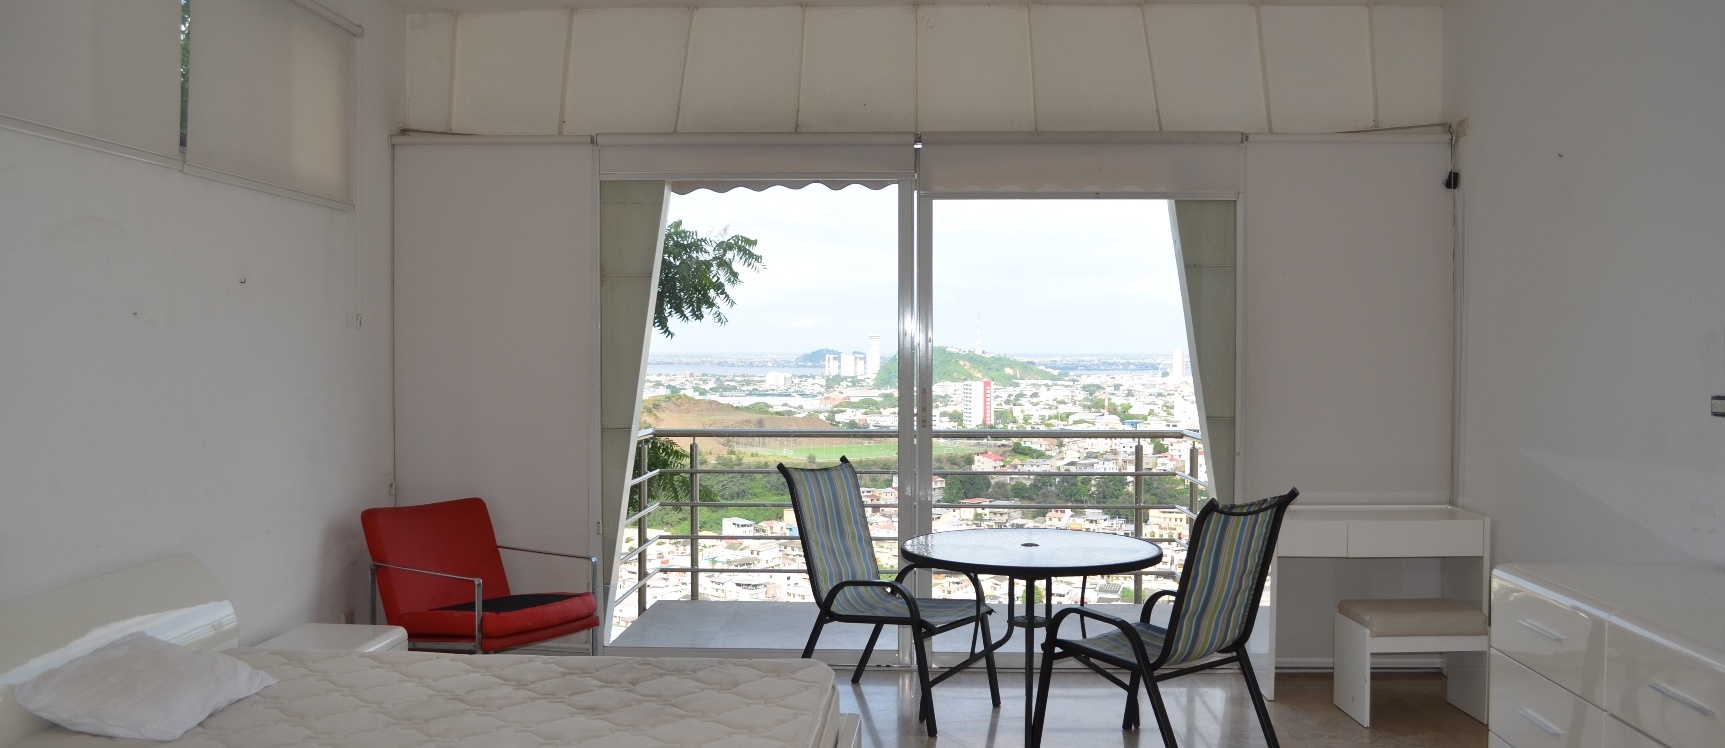 GeoBienes - Casa en venta en urbanización Bellavista sector centro sur   - Plusvalia Guayaquil Casas de venta y alquiler Inmobiliaria Ecuador